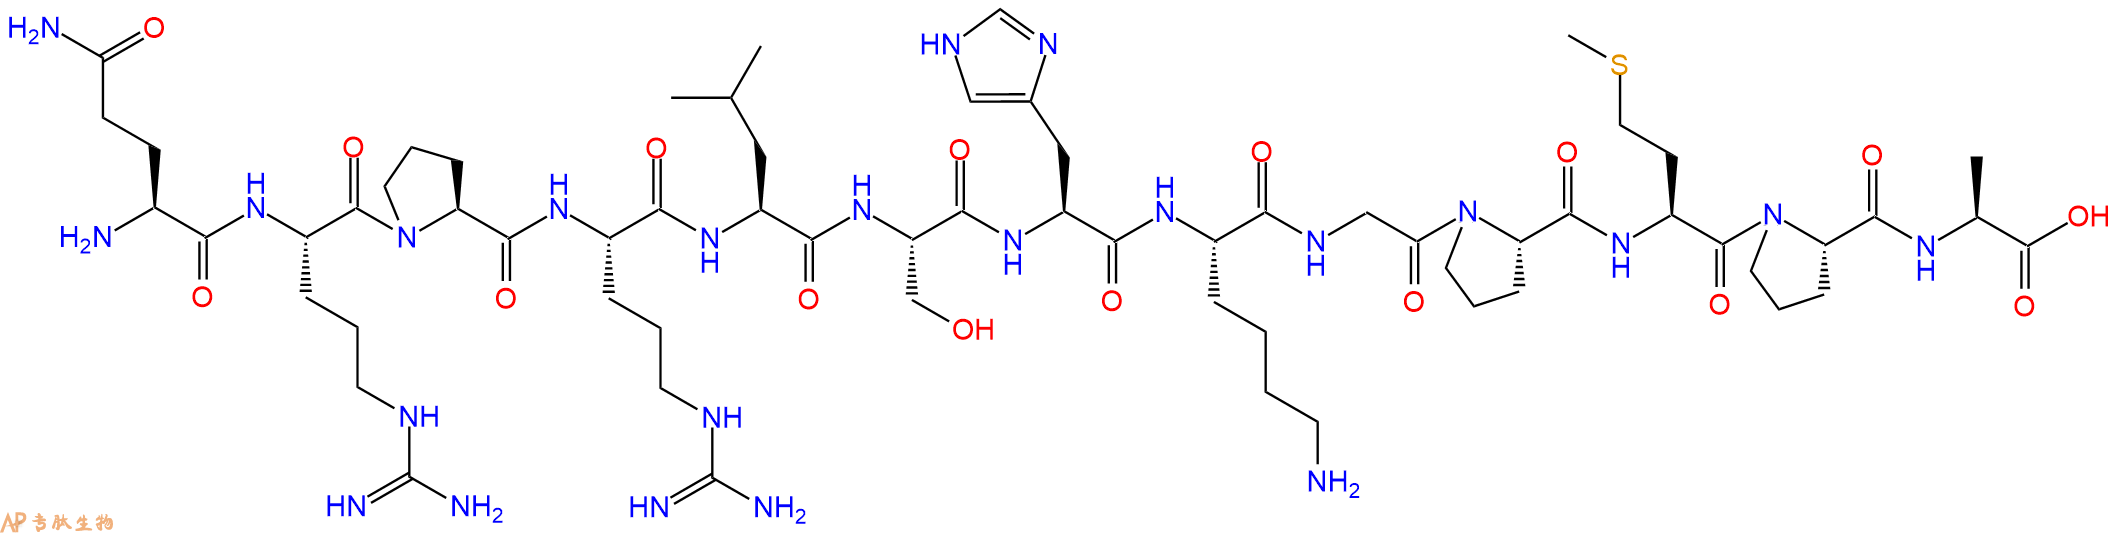 专肽生物产品爱帕琳肽、阿佩林肽：(Ala¹³)-Apelin-13 (human, bovine, mouse,568565-11-7